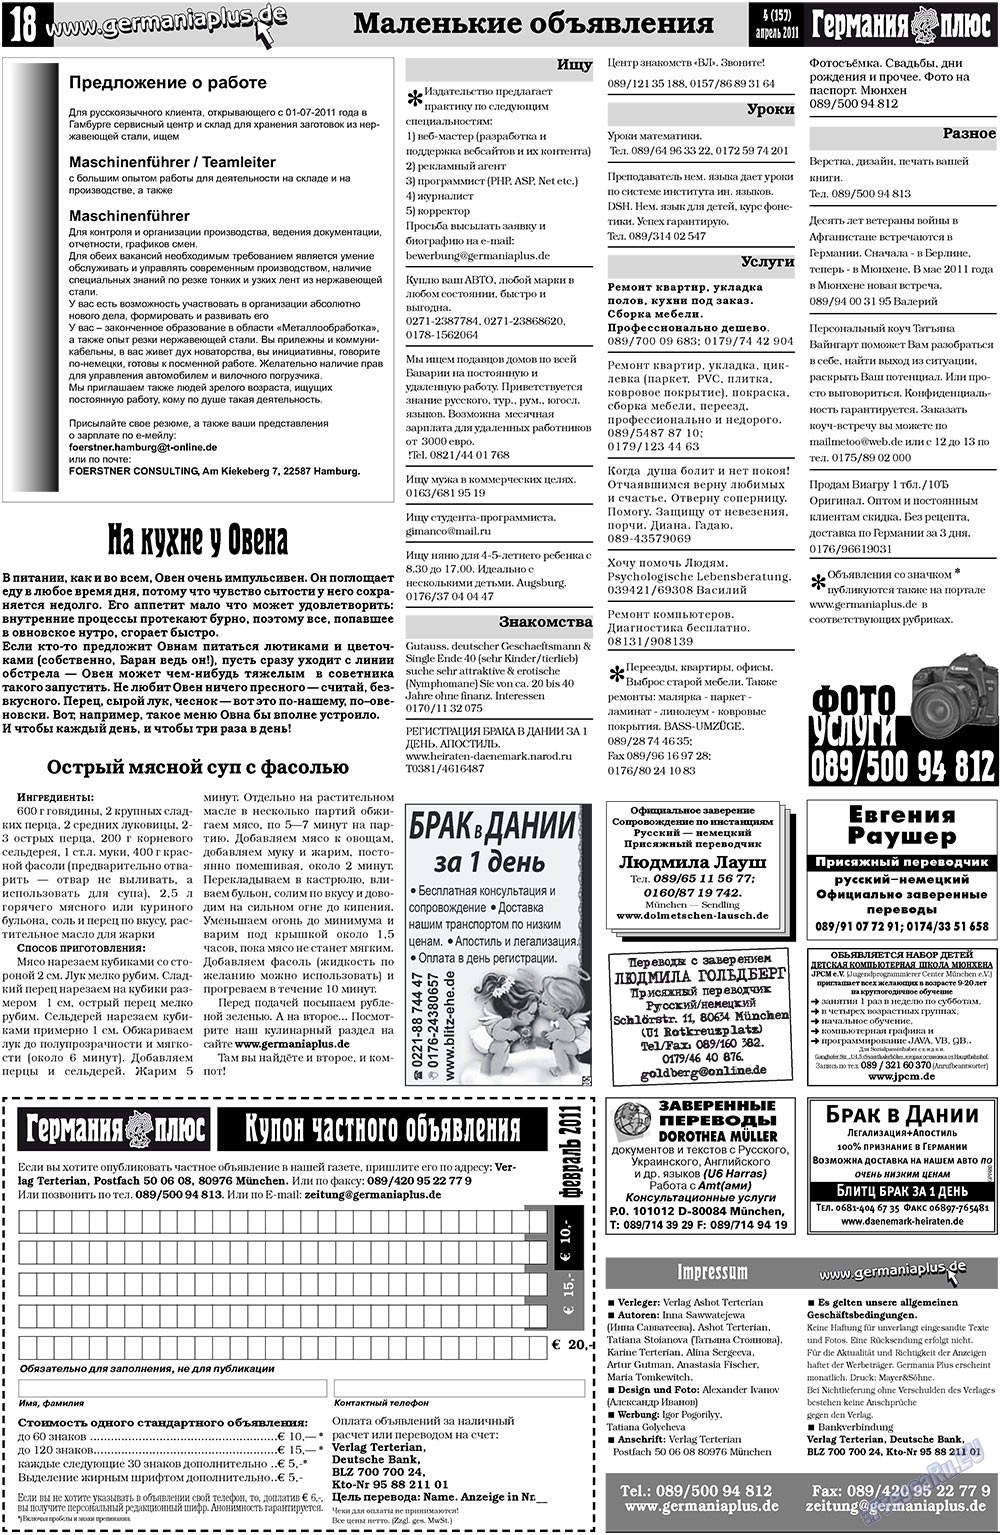 Германия плюс, газета. 2011 №4 стр.18